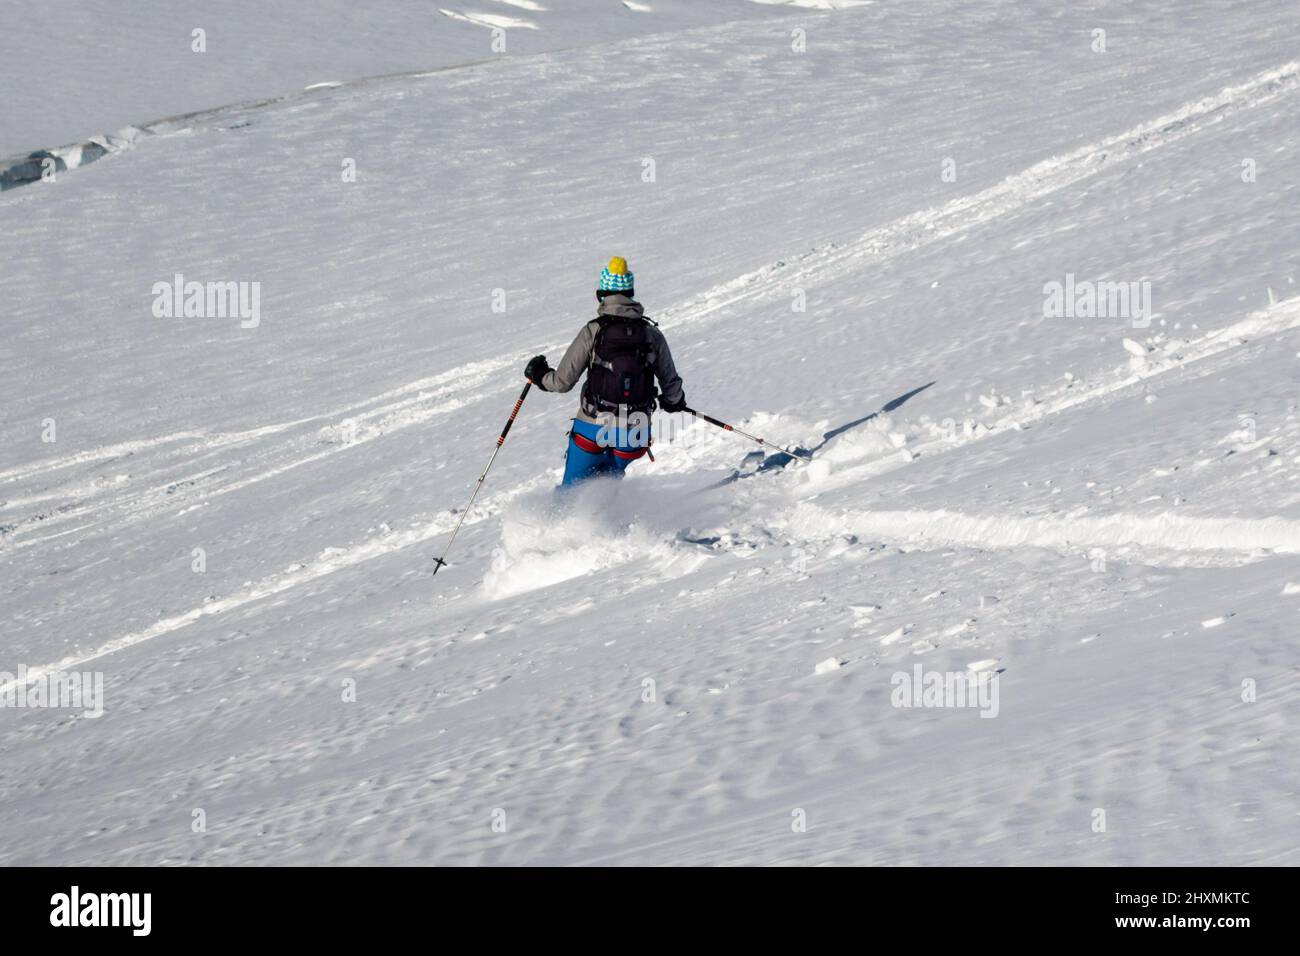 Skieur femelle de freeride unique en pente de montagne enneigée en hiver, faisant des pistes dans la neige vierge intacte de la Vallée Blanche à Chamonix en France Banque D'Images